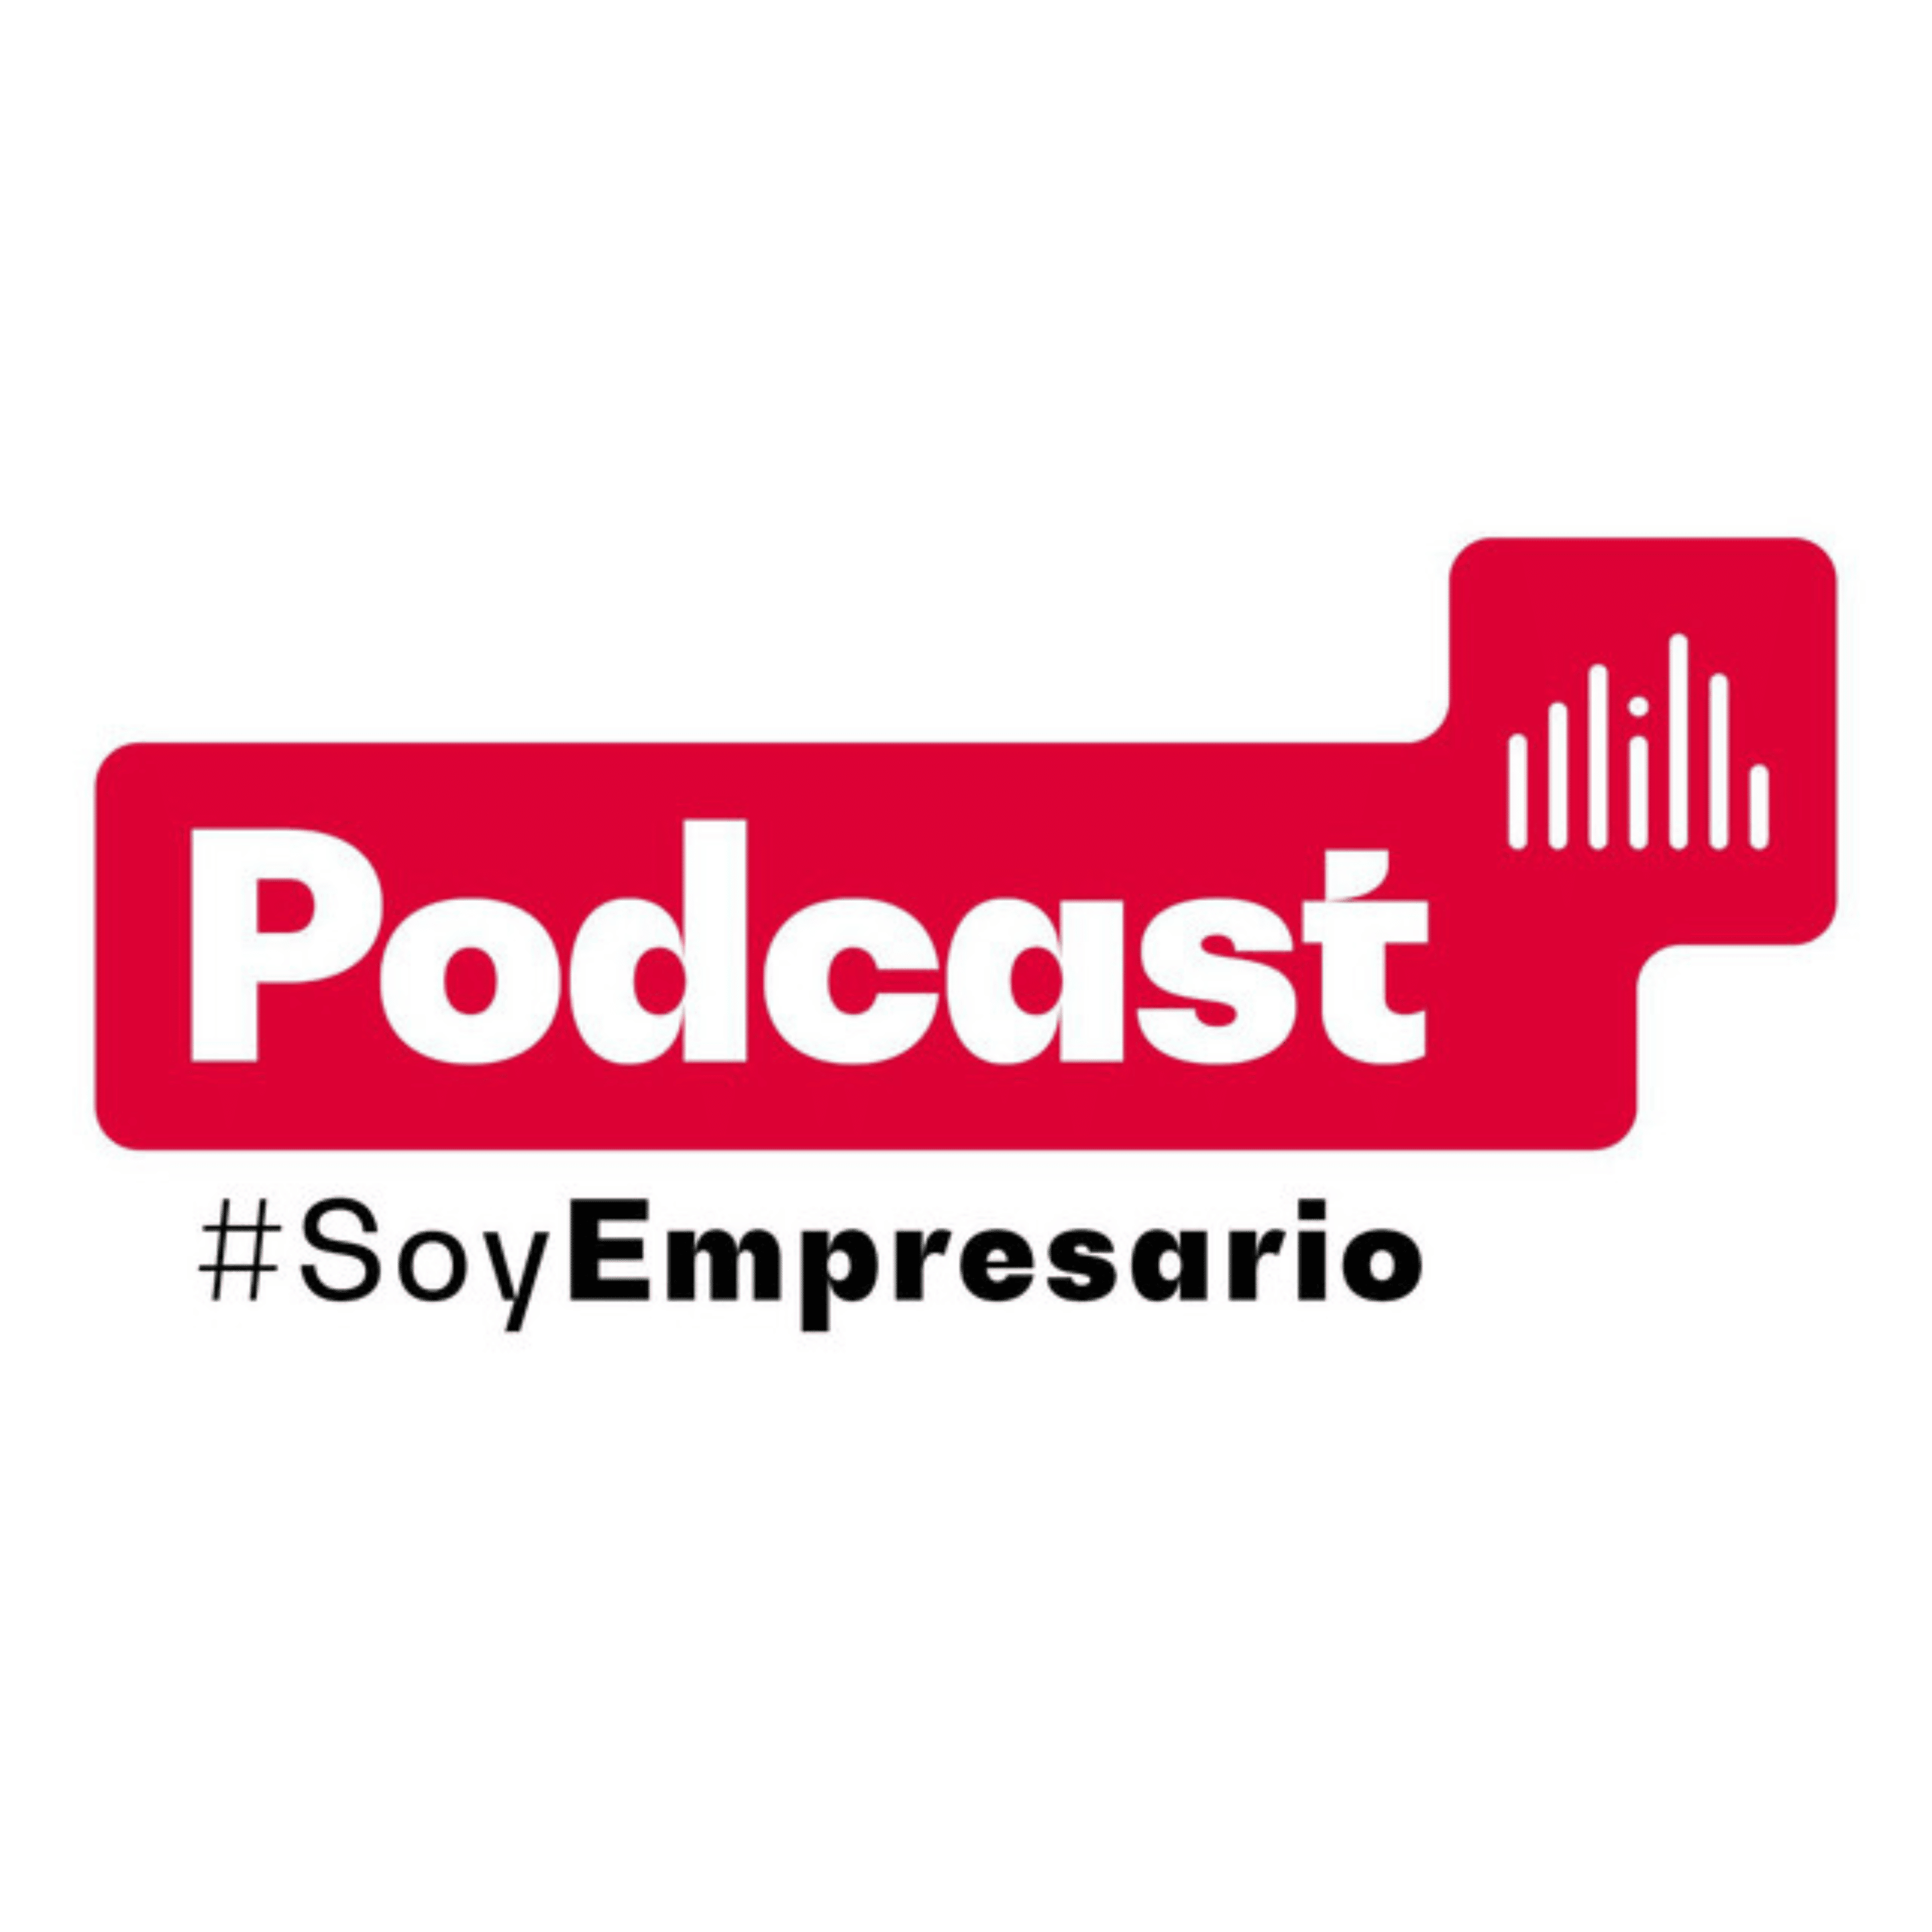 Podcast Soy Empresario de la Cámara de Comercio de Bogotá